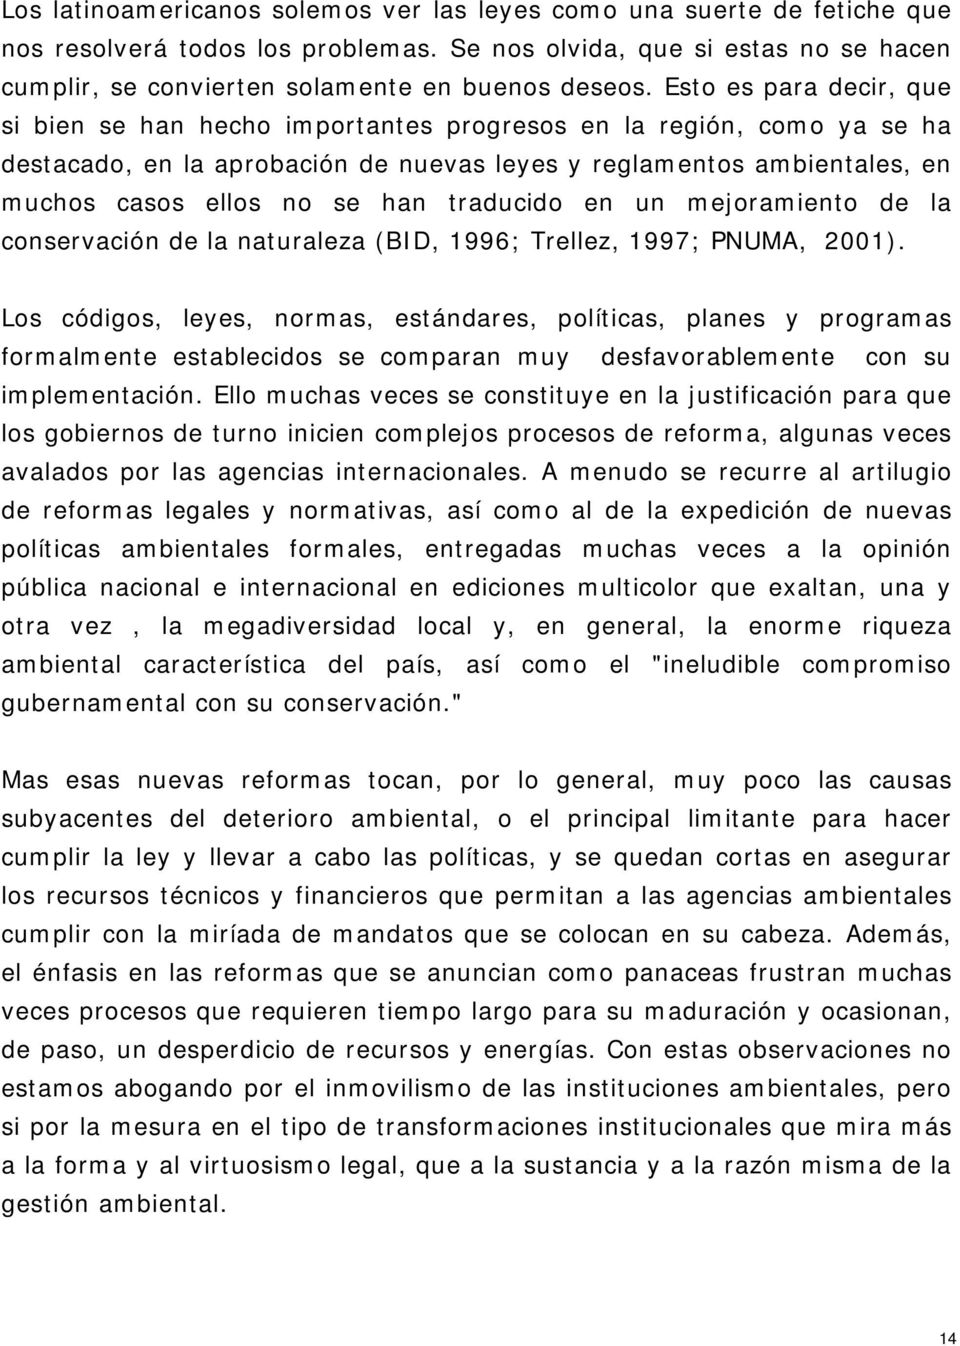 traducido en un mejoramiento de la conservación de la naturaleza (BID, 1996; Trellez, 1997; PNUMA, 2001).